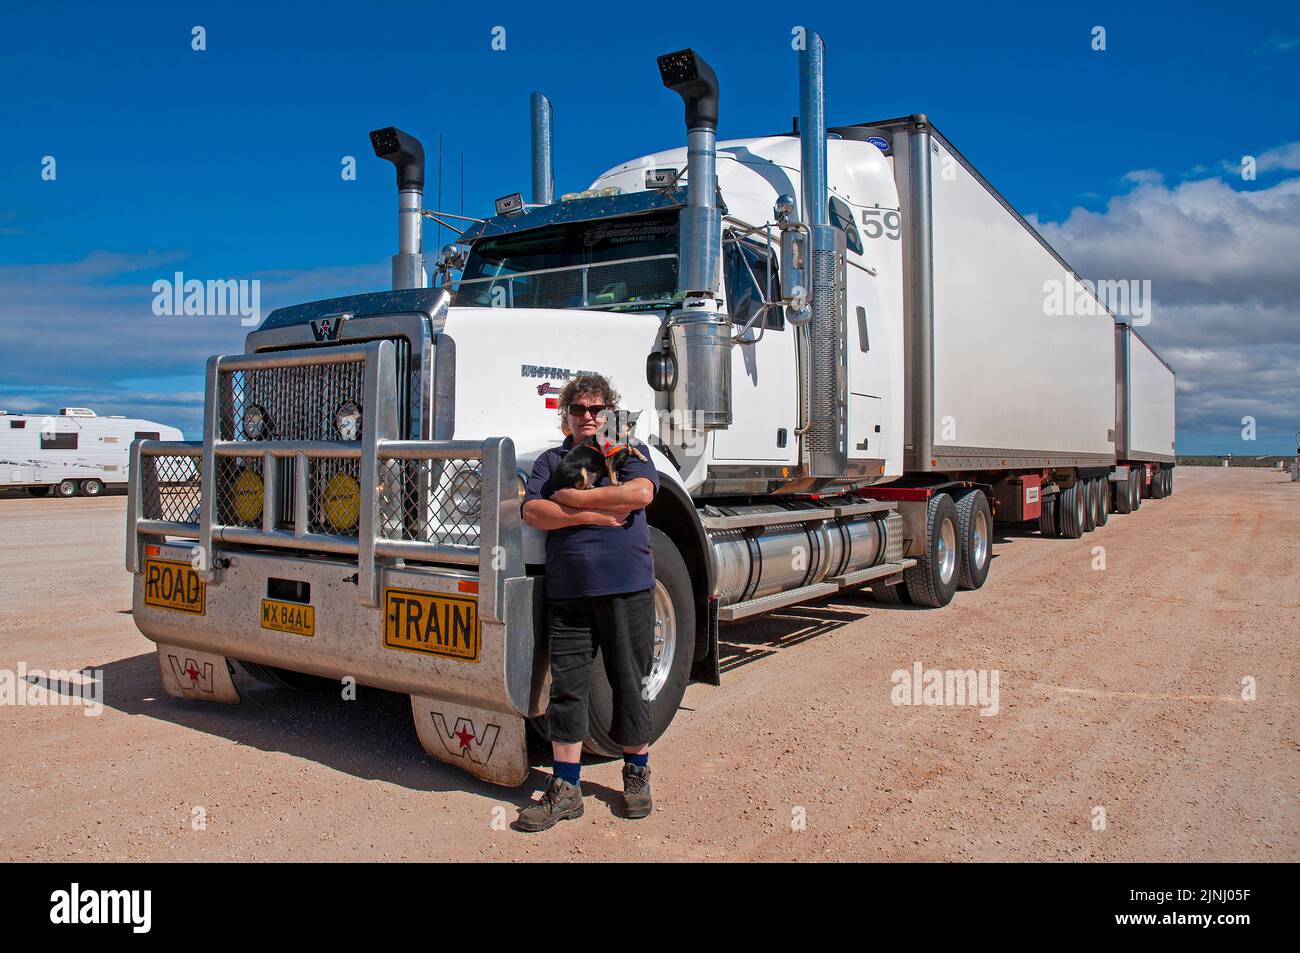 Die LKW-Fahrerin, die Frau, die Frau, ist mit ihrem B Double Truck unterwegs, in dem sie zwei Mal pro Woche 75 Tonnen Tomaten zwischen Perth und Adelaide transportiert und eine Strecke von mehr als 10.000 km zurückgelegt hat Stockfoto